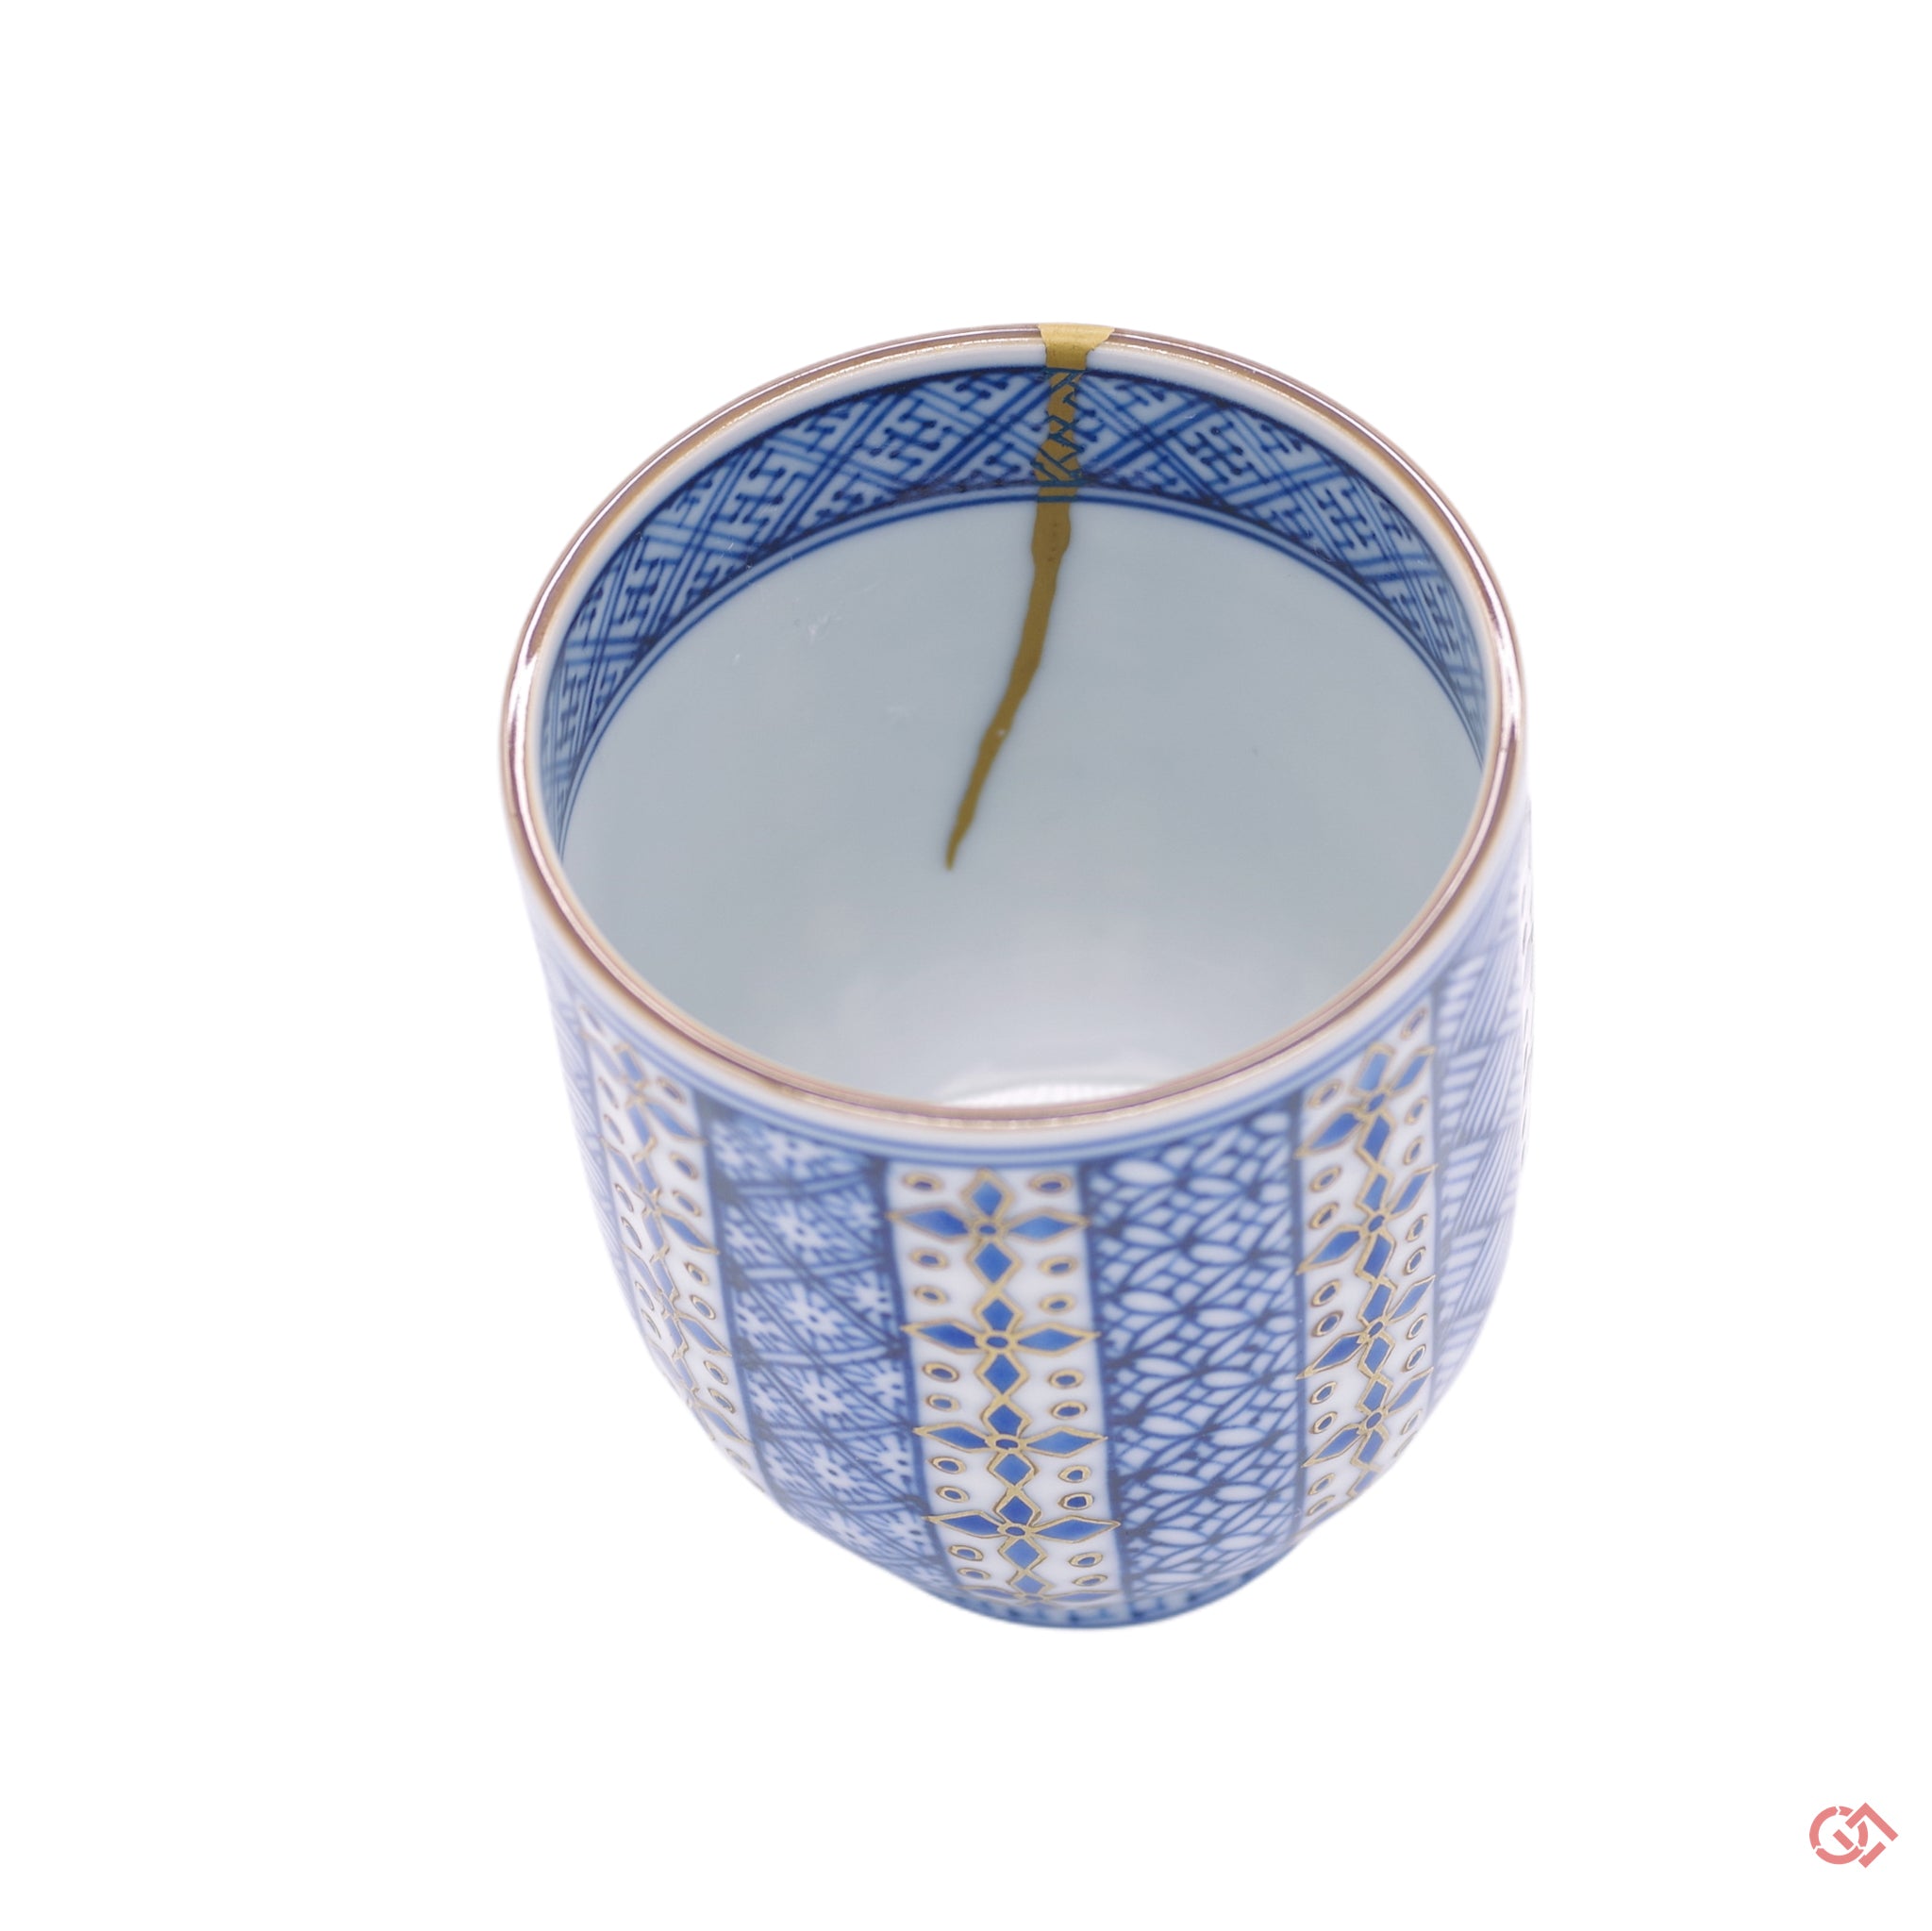 Unique Kintsugi Sake Cup Syonzui Diamond pattern